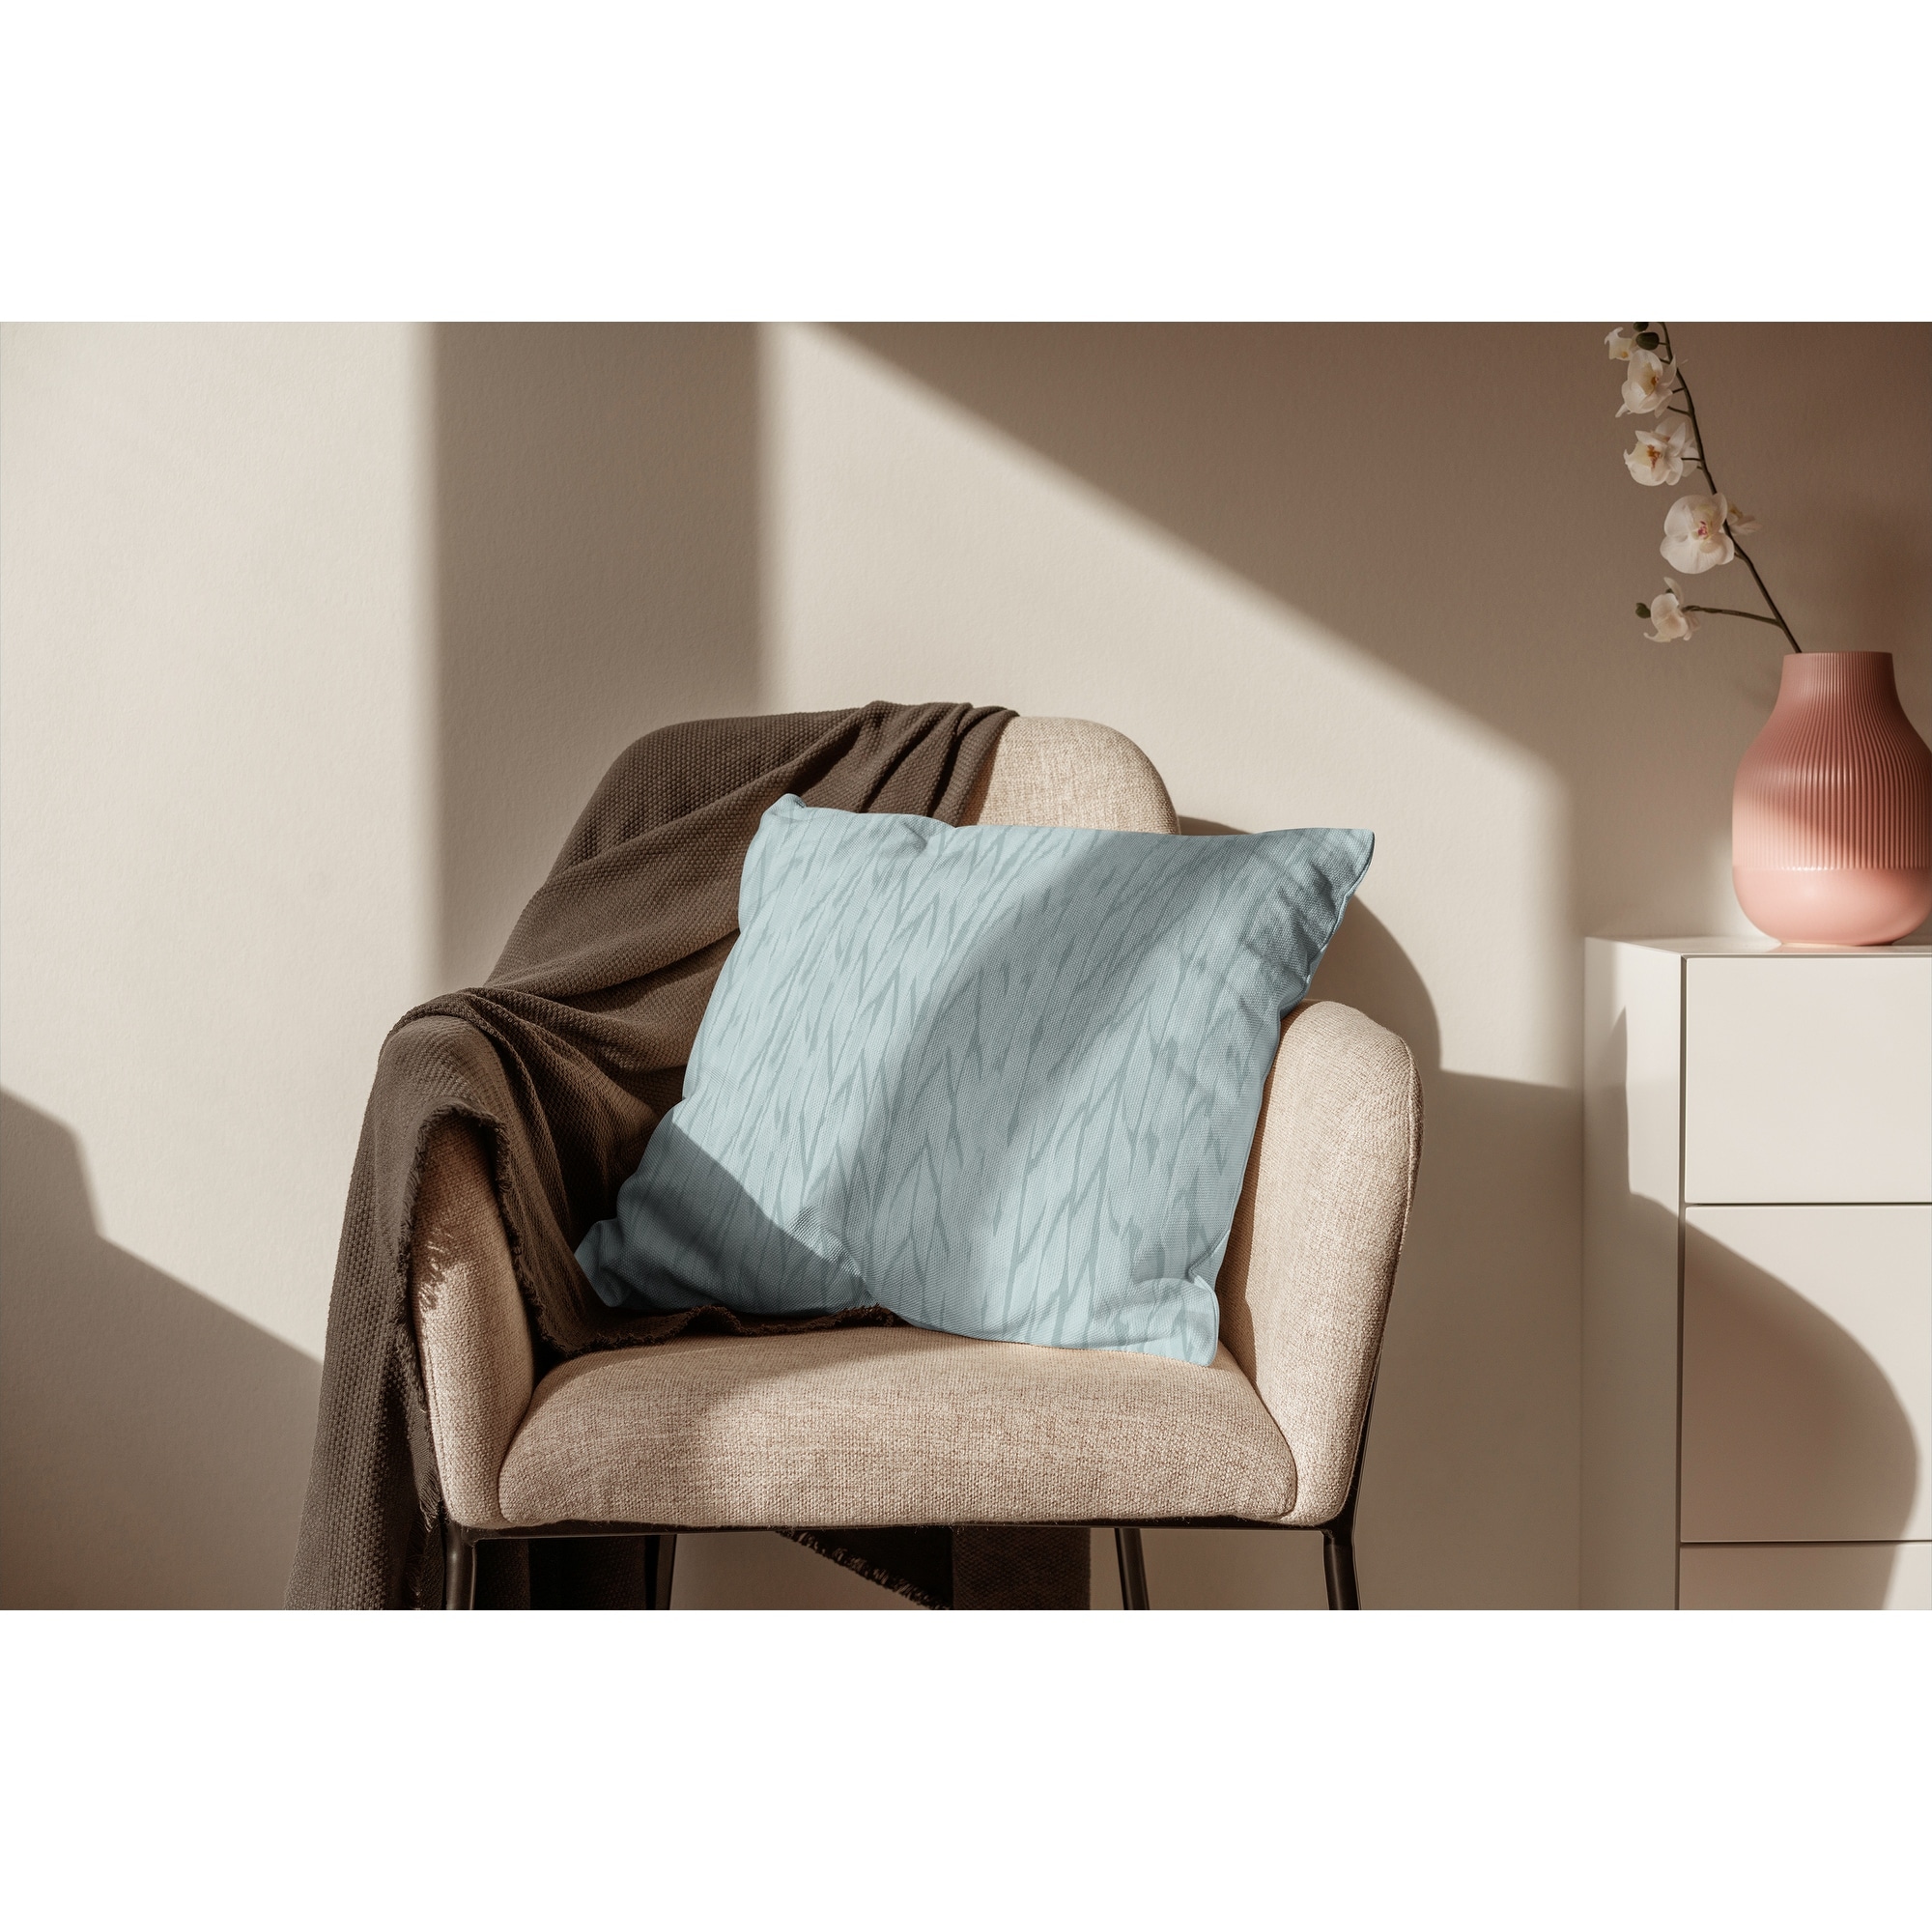 RIDGE LIGHT BLUE Accent Pillow By Kavka Designs